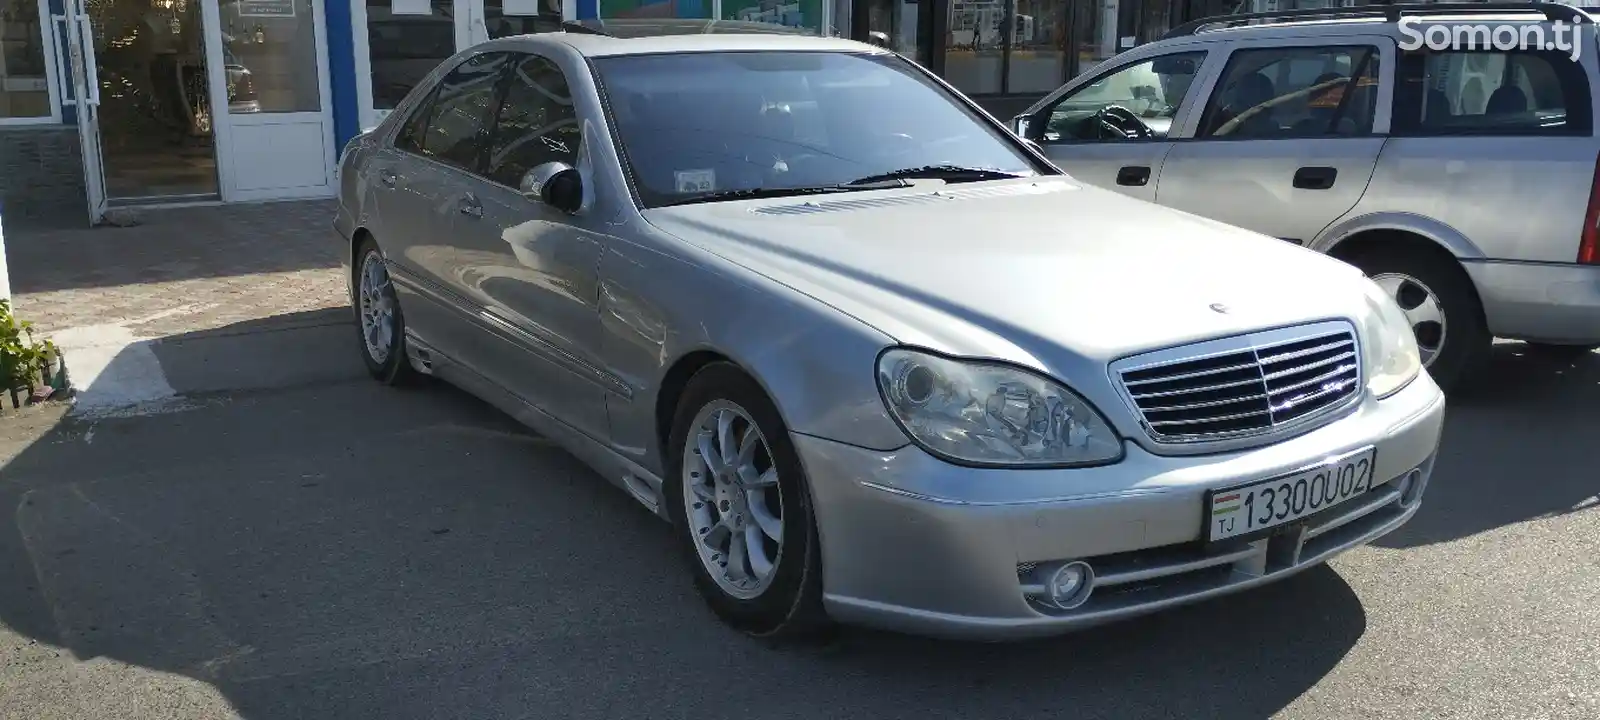 Mercedes-Benz S class, 2000-2